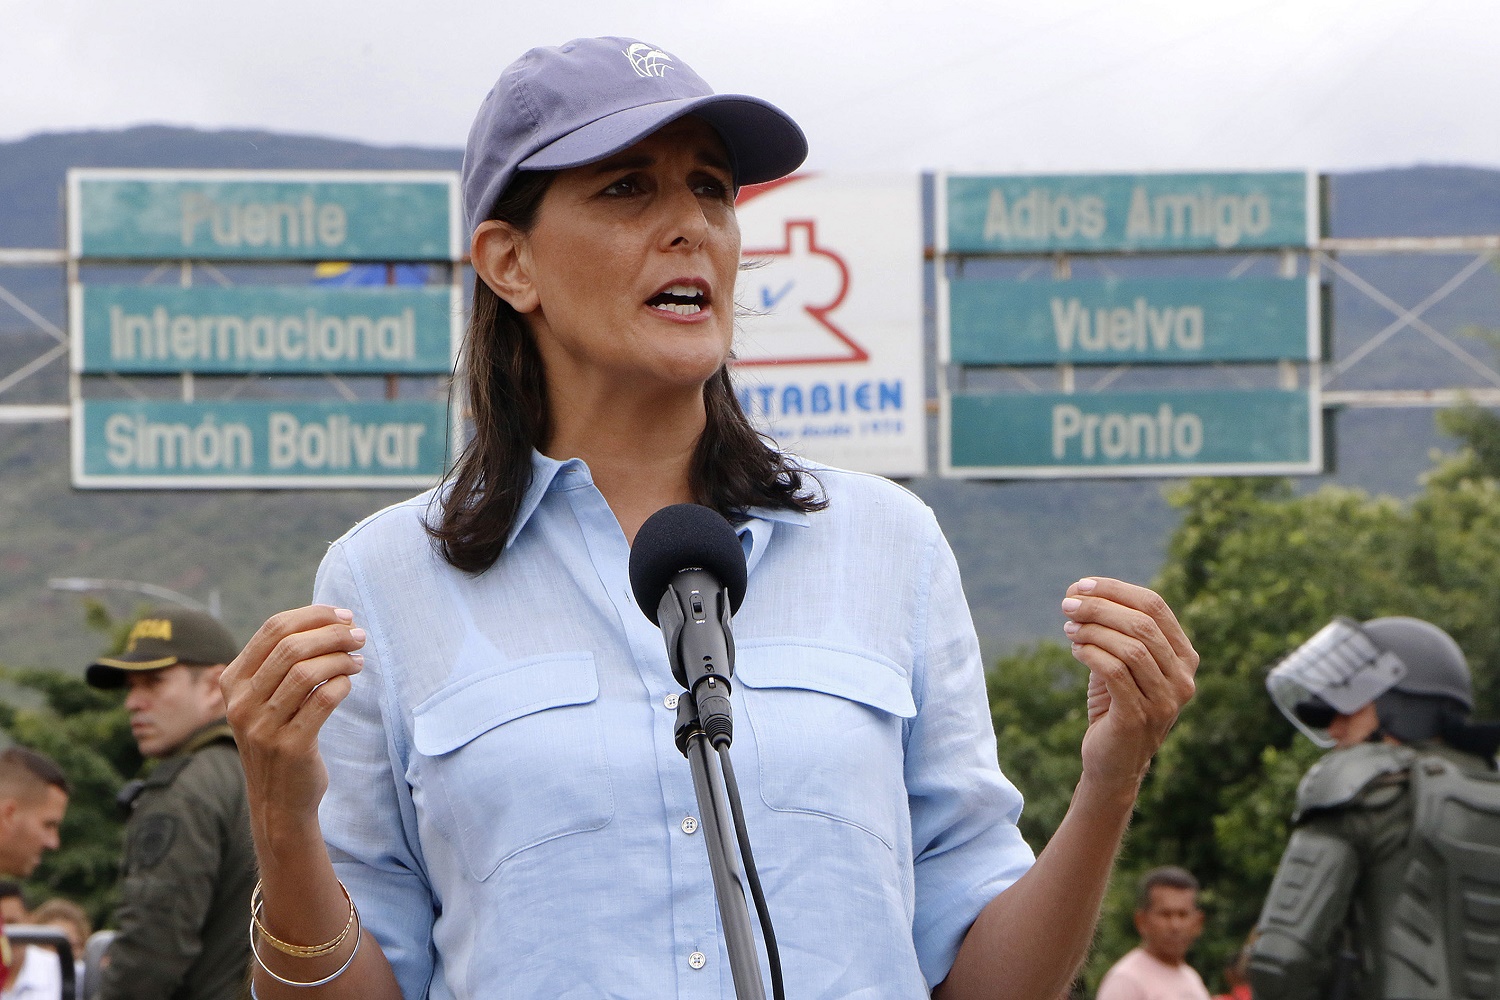 EEUU dona a Colombia 9 millones de dólares para ayuda humanitaria a inmigrantes venezolanos (VIDEO)